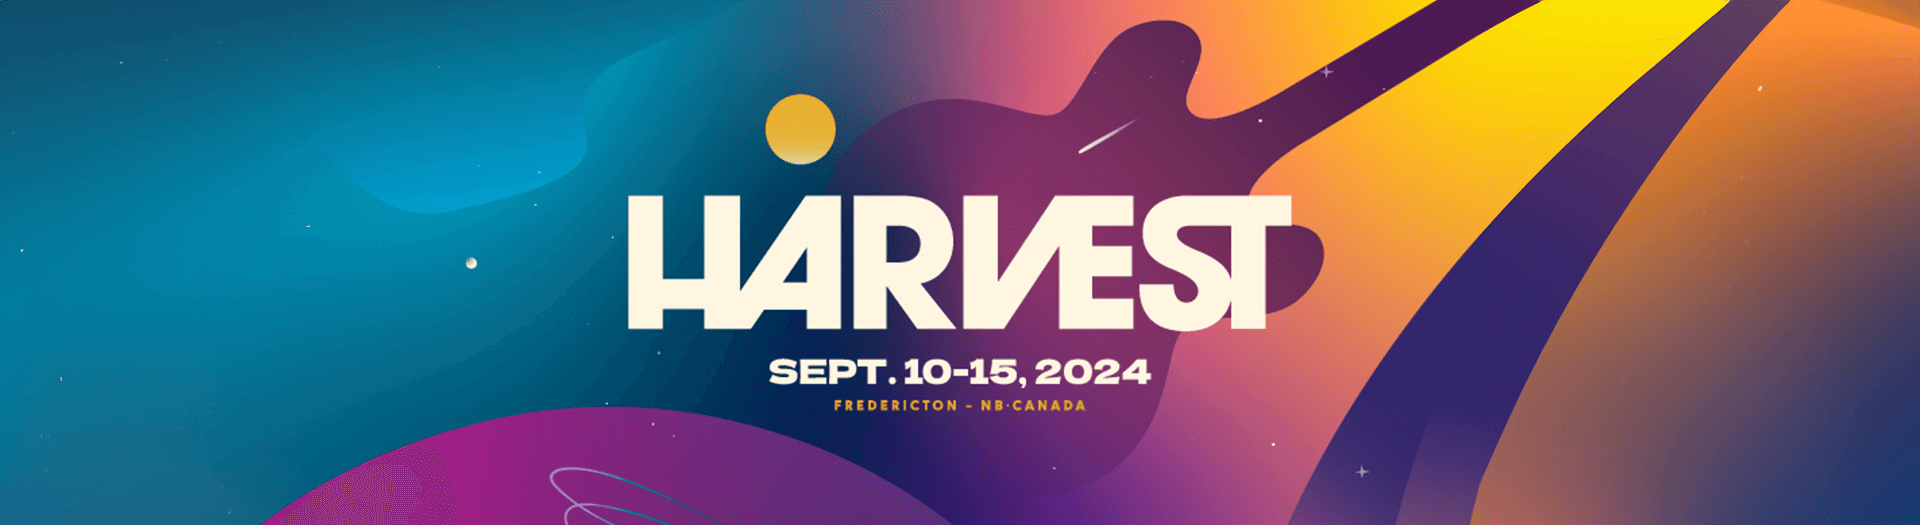 Harvest Music Festival, Fredericton, NB